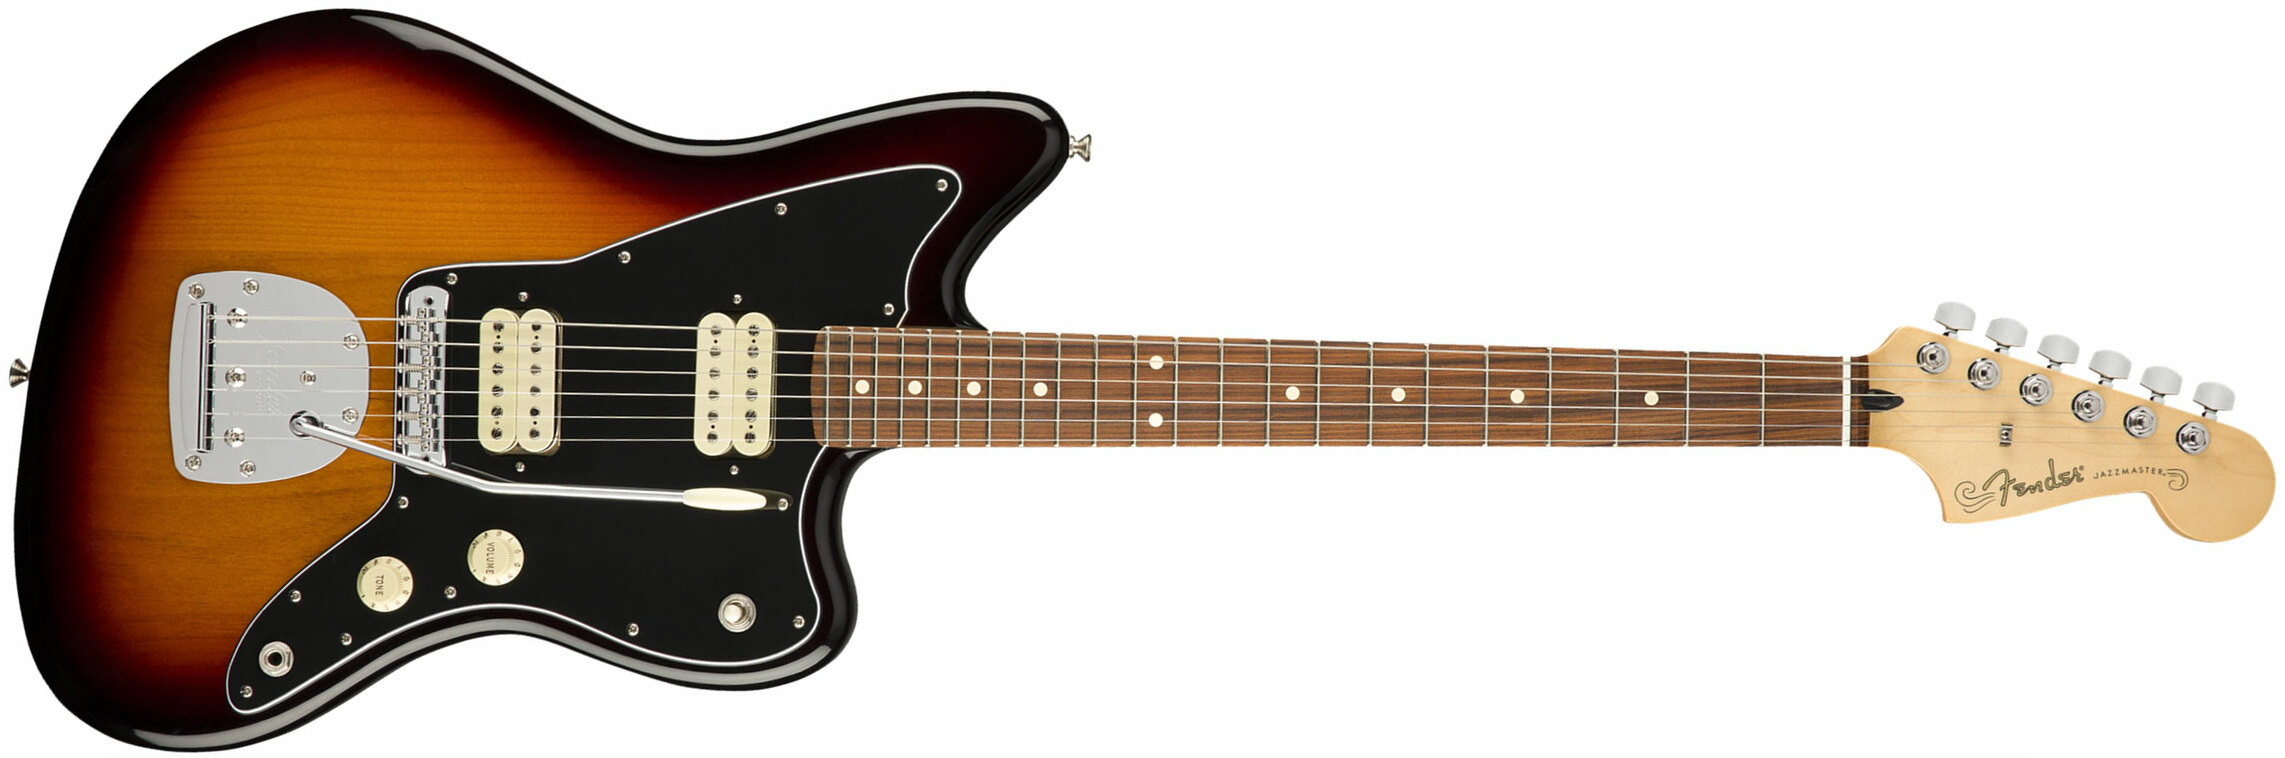 Fender Jazzmaster Player Mex Hh Pf - 3-color Sunburst - Retro-rock elektrische gitaar - Main picture